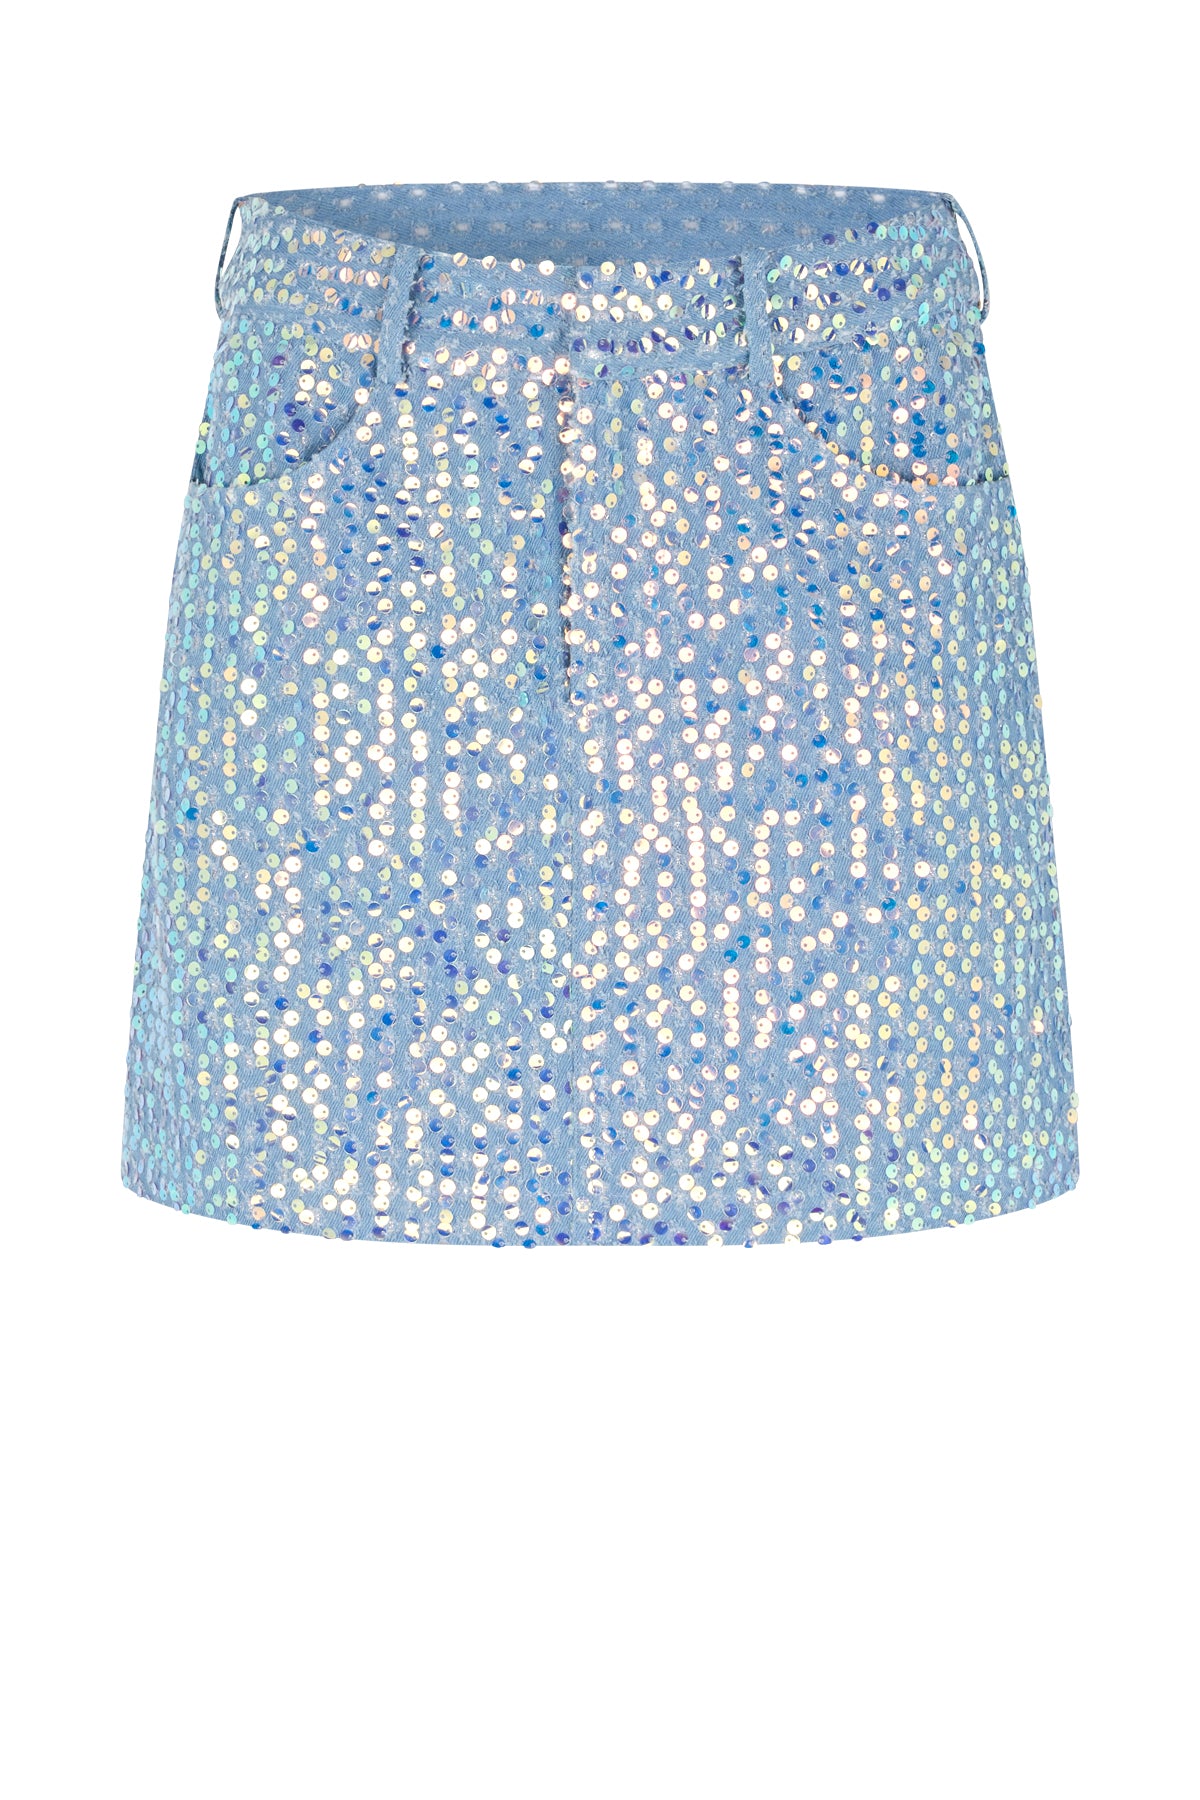 CRAS North Skirt Skirt Blue Glitter